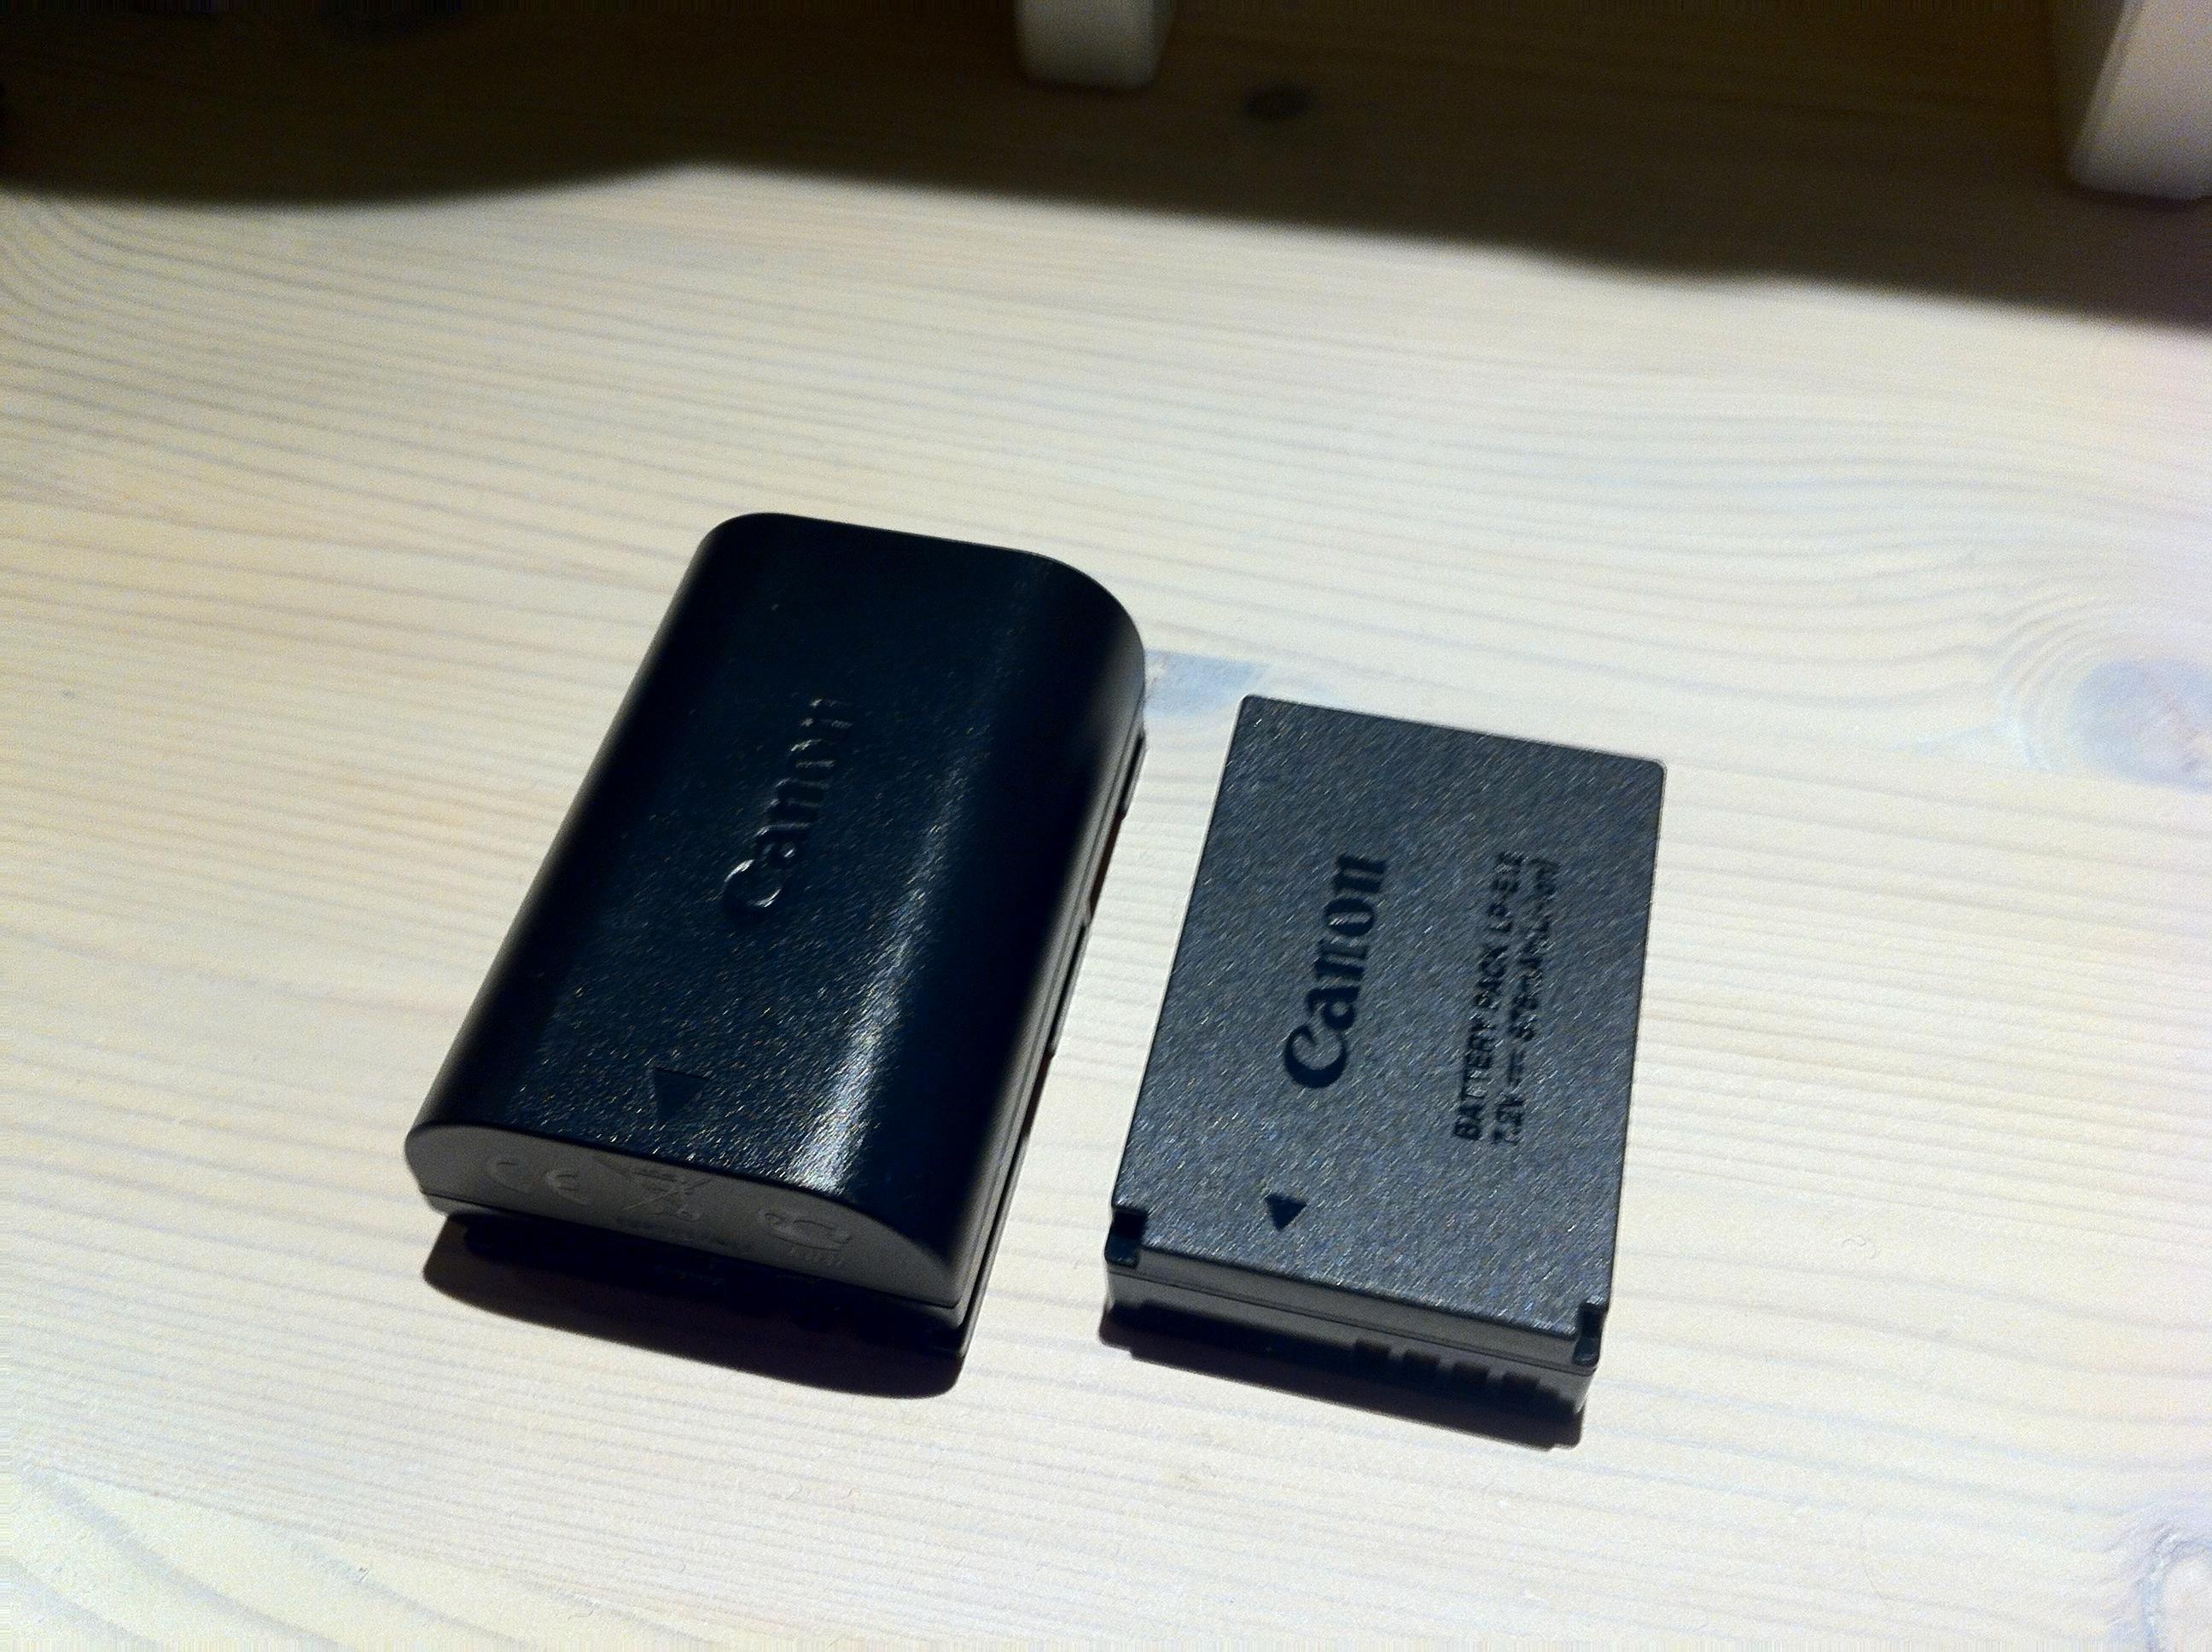 Batteriet til Canons entusiastmodeller til venstre, og batteriet til 100D til høyre. Foto: Paal Mork-Knutsen, Akam.no